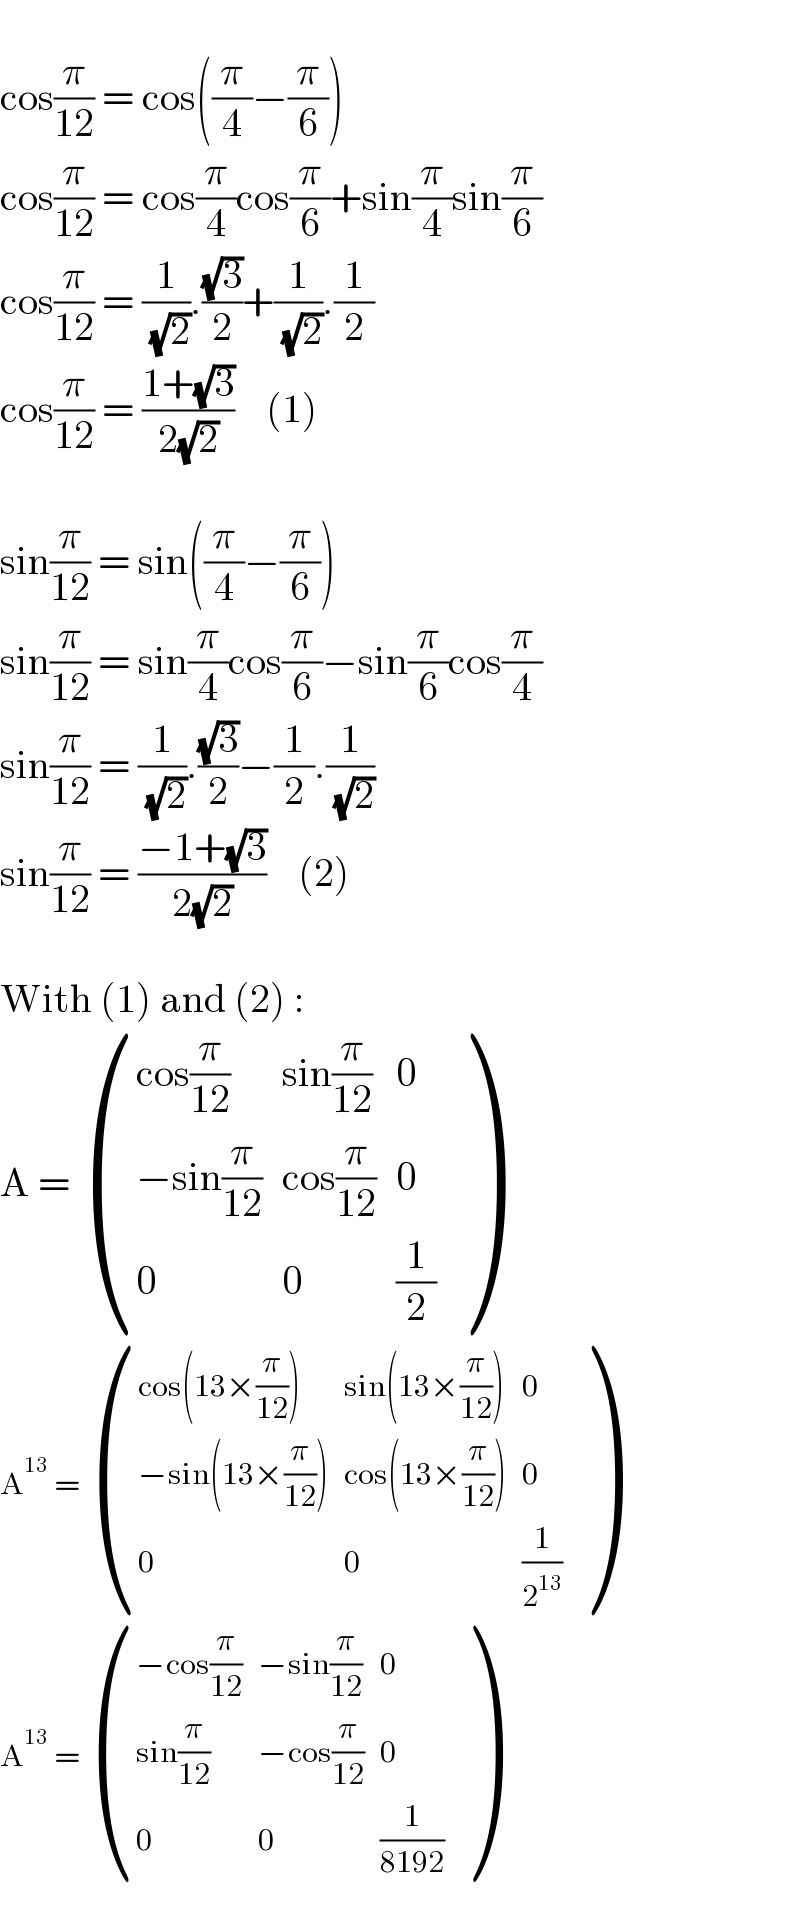    cos(π/(12)) = cos((π/4)−(π/6))  cos(π/(12)) = cos(π/4)cos(π/6)+sin(π/4)sin(π/6)  cos(π/(12)) = (1/( (√2))).((√3)/2)+(1/( (√2))).(1/2)  cos(π/(12)) = ((1+(√3))/(2(√2)))    (1)    sin(π/(12)) = sin((π/4)−(π/6))  sin(π/(12)) = sin(π/4)cos(π/6)−sin(π/6)cos(π/4)  sin(π/(12)) = (1/( (√2))).((√3)/2)−(1/2).(1/( (√2)))  sin(π/(12)) = ((−1+(√3))/(2(√2)))    (2)    With (1) and (2) :  A =  (((cos(π/(12))),(sin(π/(12))),0),((−sin(π/(12))),(cos(π/(12))),0),(0,0,(1/2)) )  A^(13)  =  (((cos(13×(π/(12)))),(sin(13×(π/(12)))),0),((−sin(13×(π/(12)))),(cos(13×(π/(12)))),0),(0,0,(1/2^(13) )) )  A^(13)  =  (((−cos(π/(12))),(−sin(π/(12))),0),((sin(π/(12))),(−cos(π/(12))),0),(0,0,(1/(8192))) )  